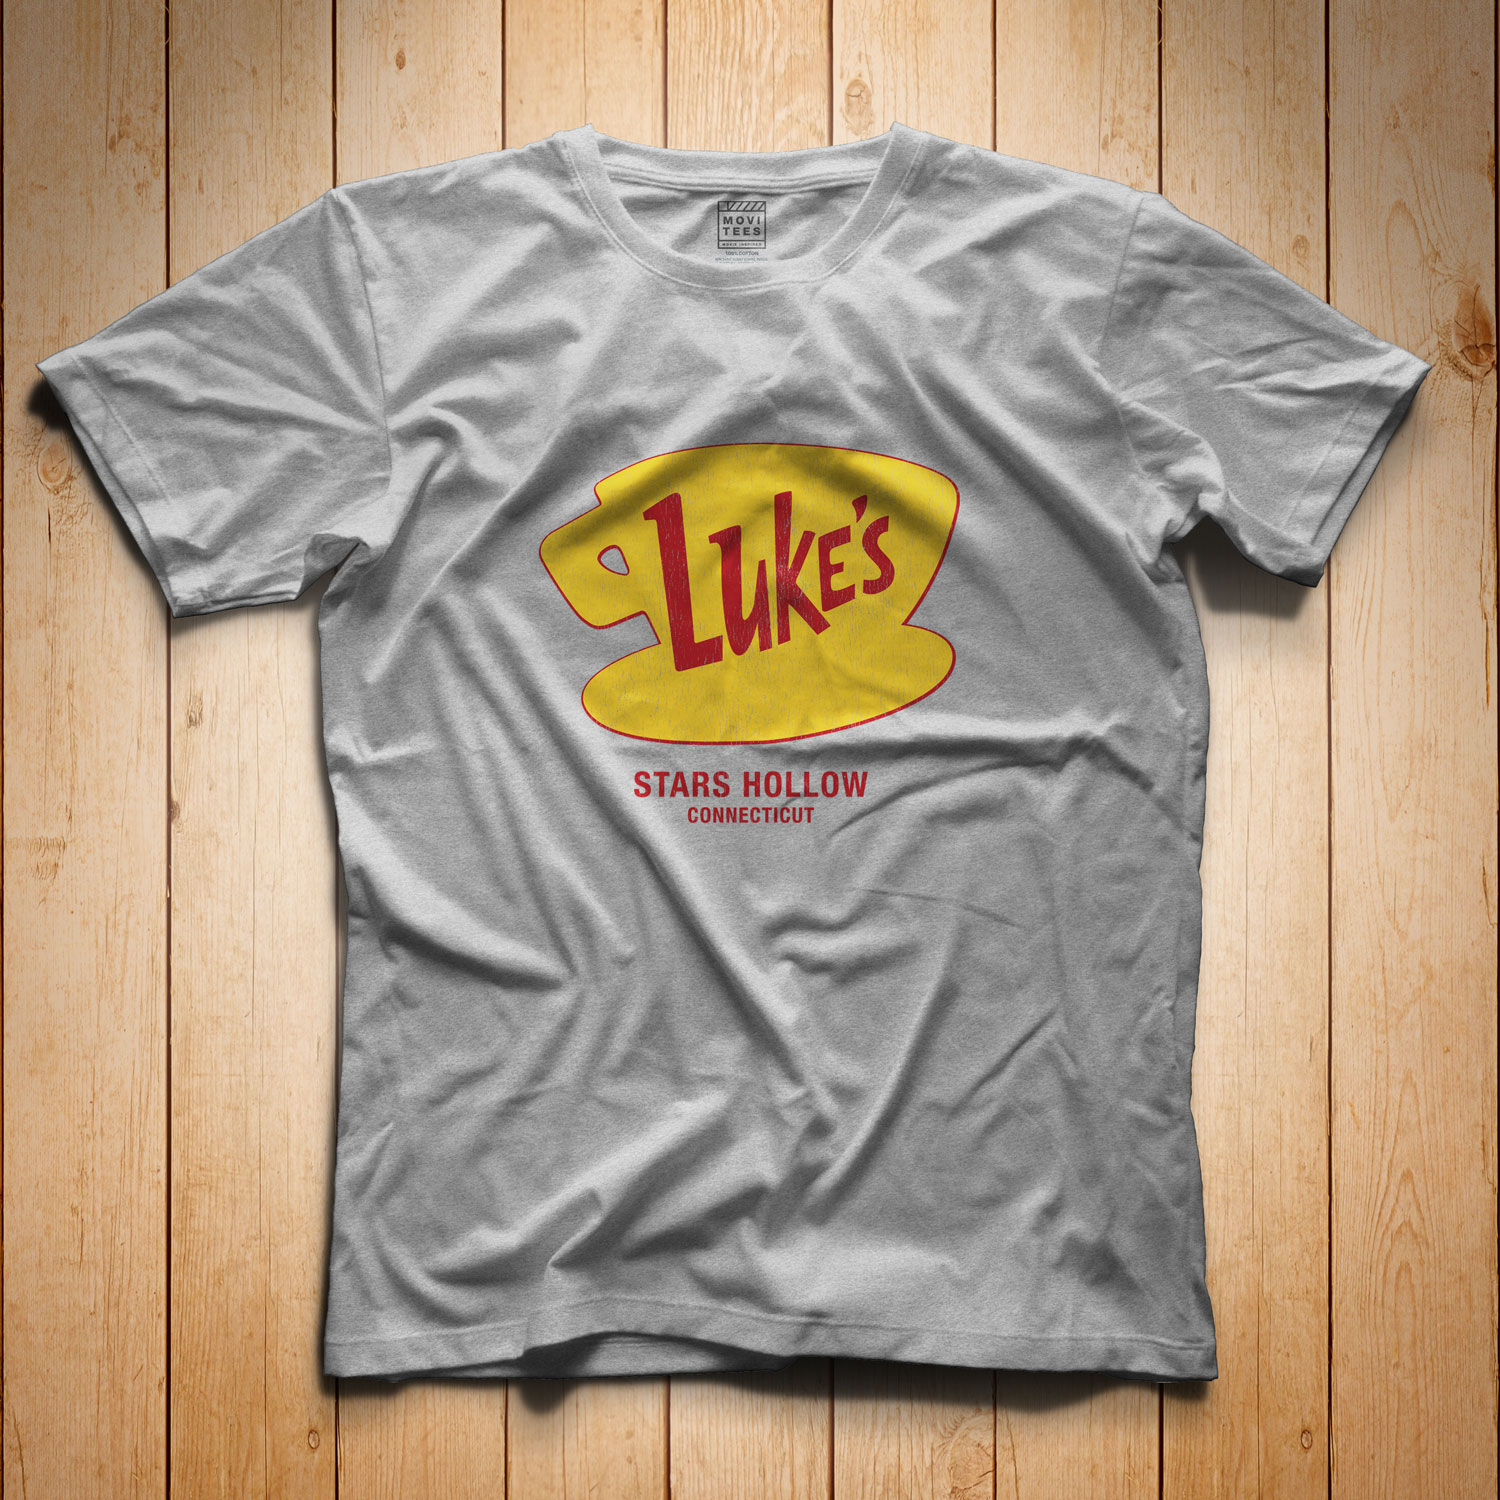 Luke's Diner T-Shirt inspired by Gilmore Girls - Regular T-Shirt — MoviTees